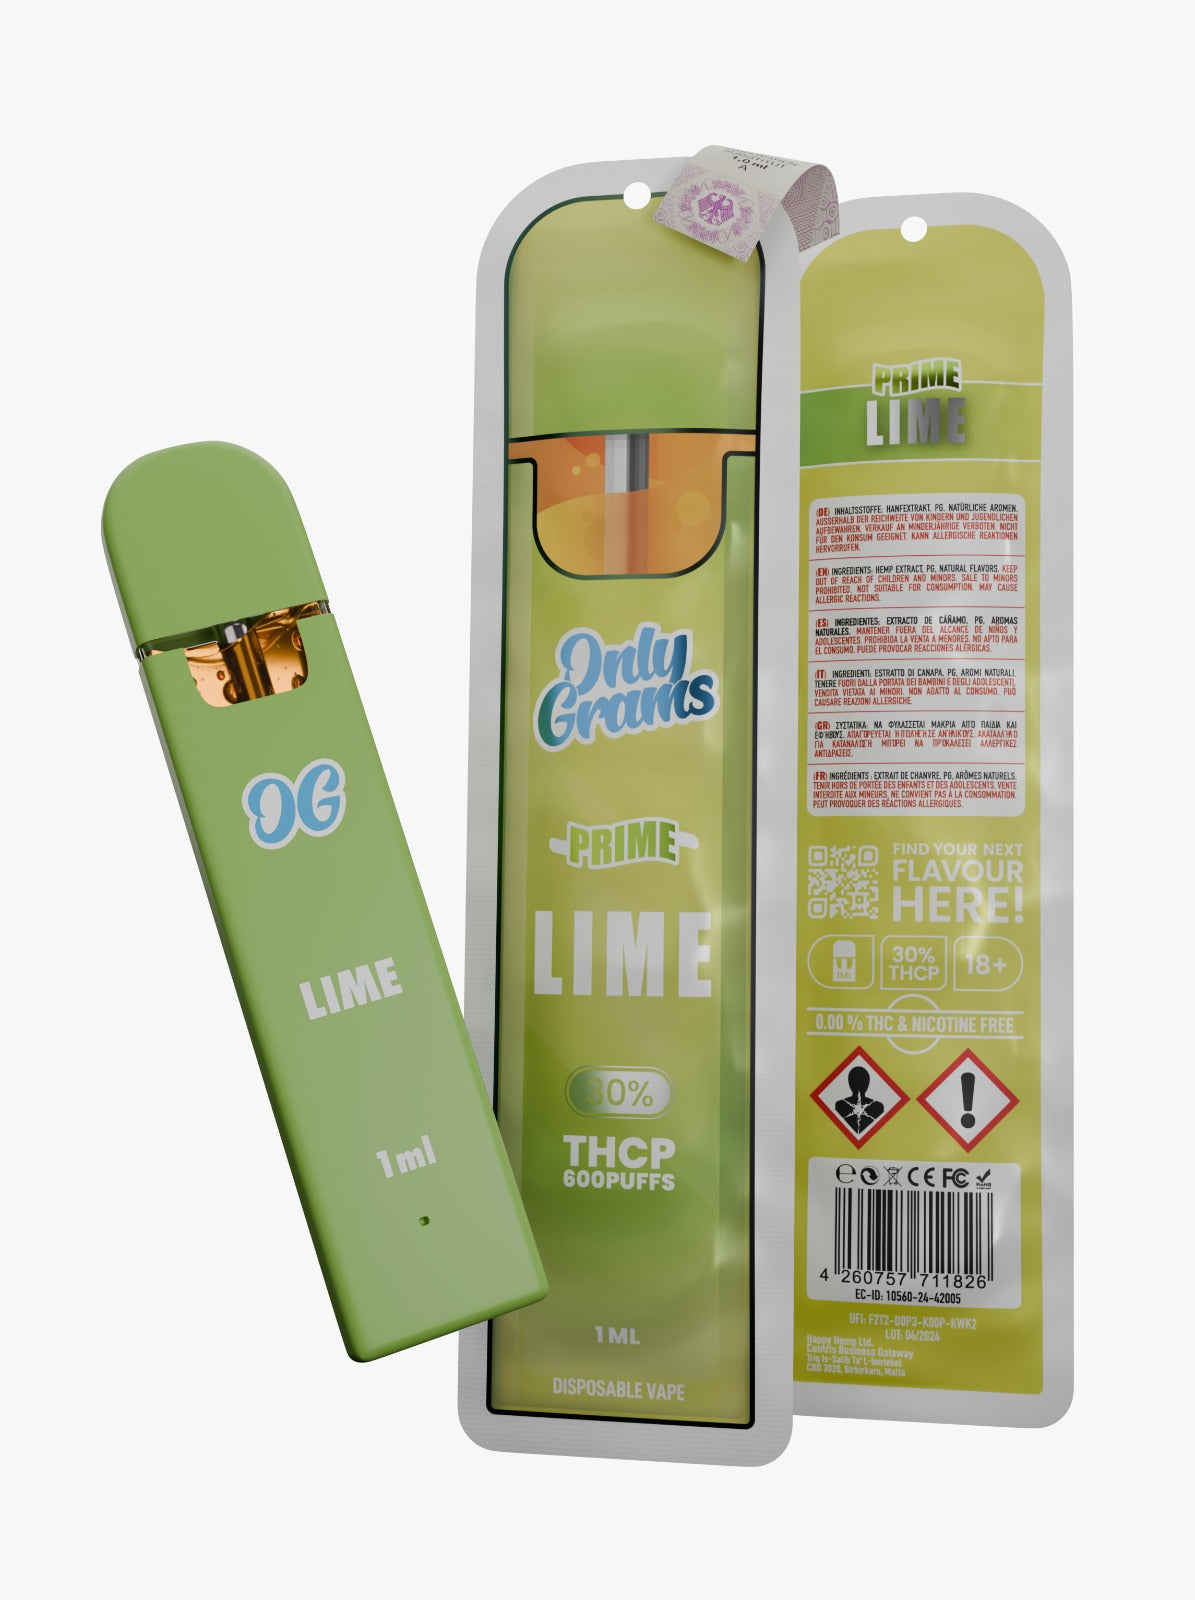 OnlyGrams Lime (S) THCP 30% Vape